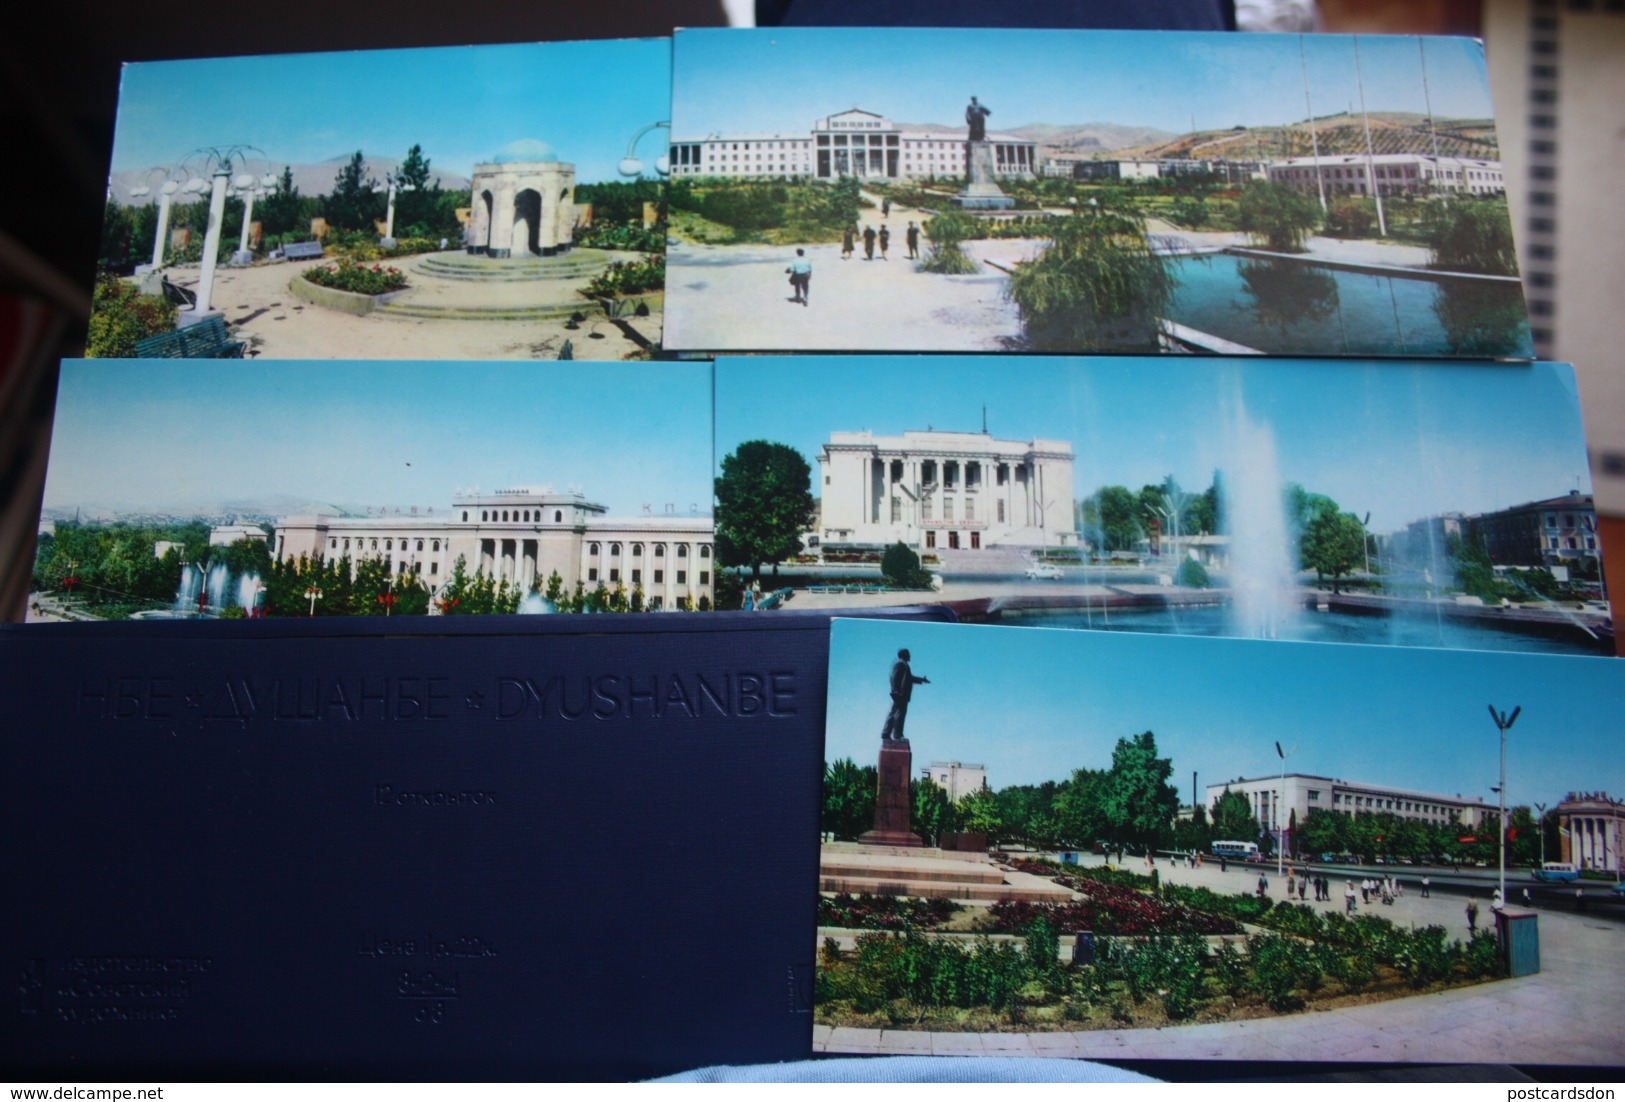 TAJIKISTAN  Dushanbe  Capital.  11 Postcards Lot  - Old USSR Postcard  - 1960s - Tadjikistan